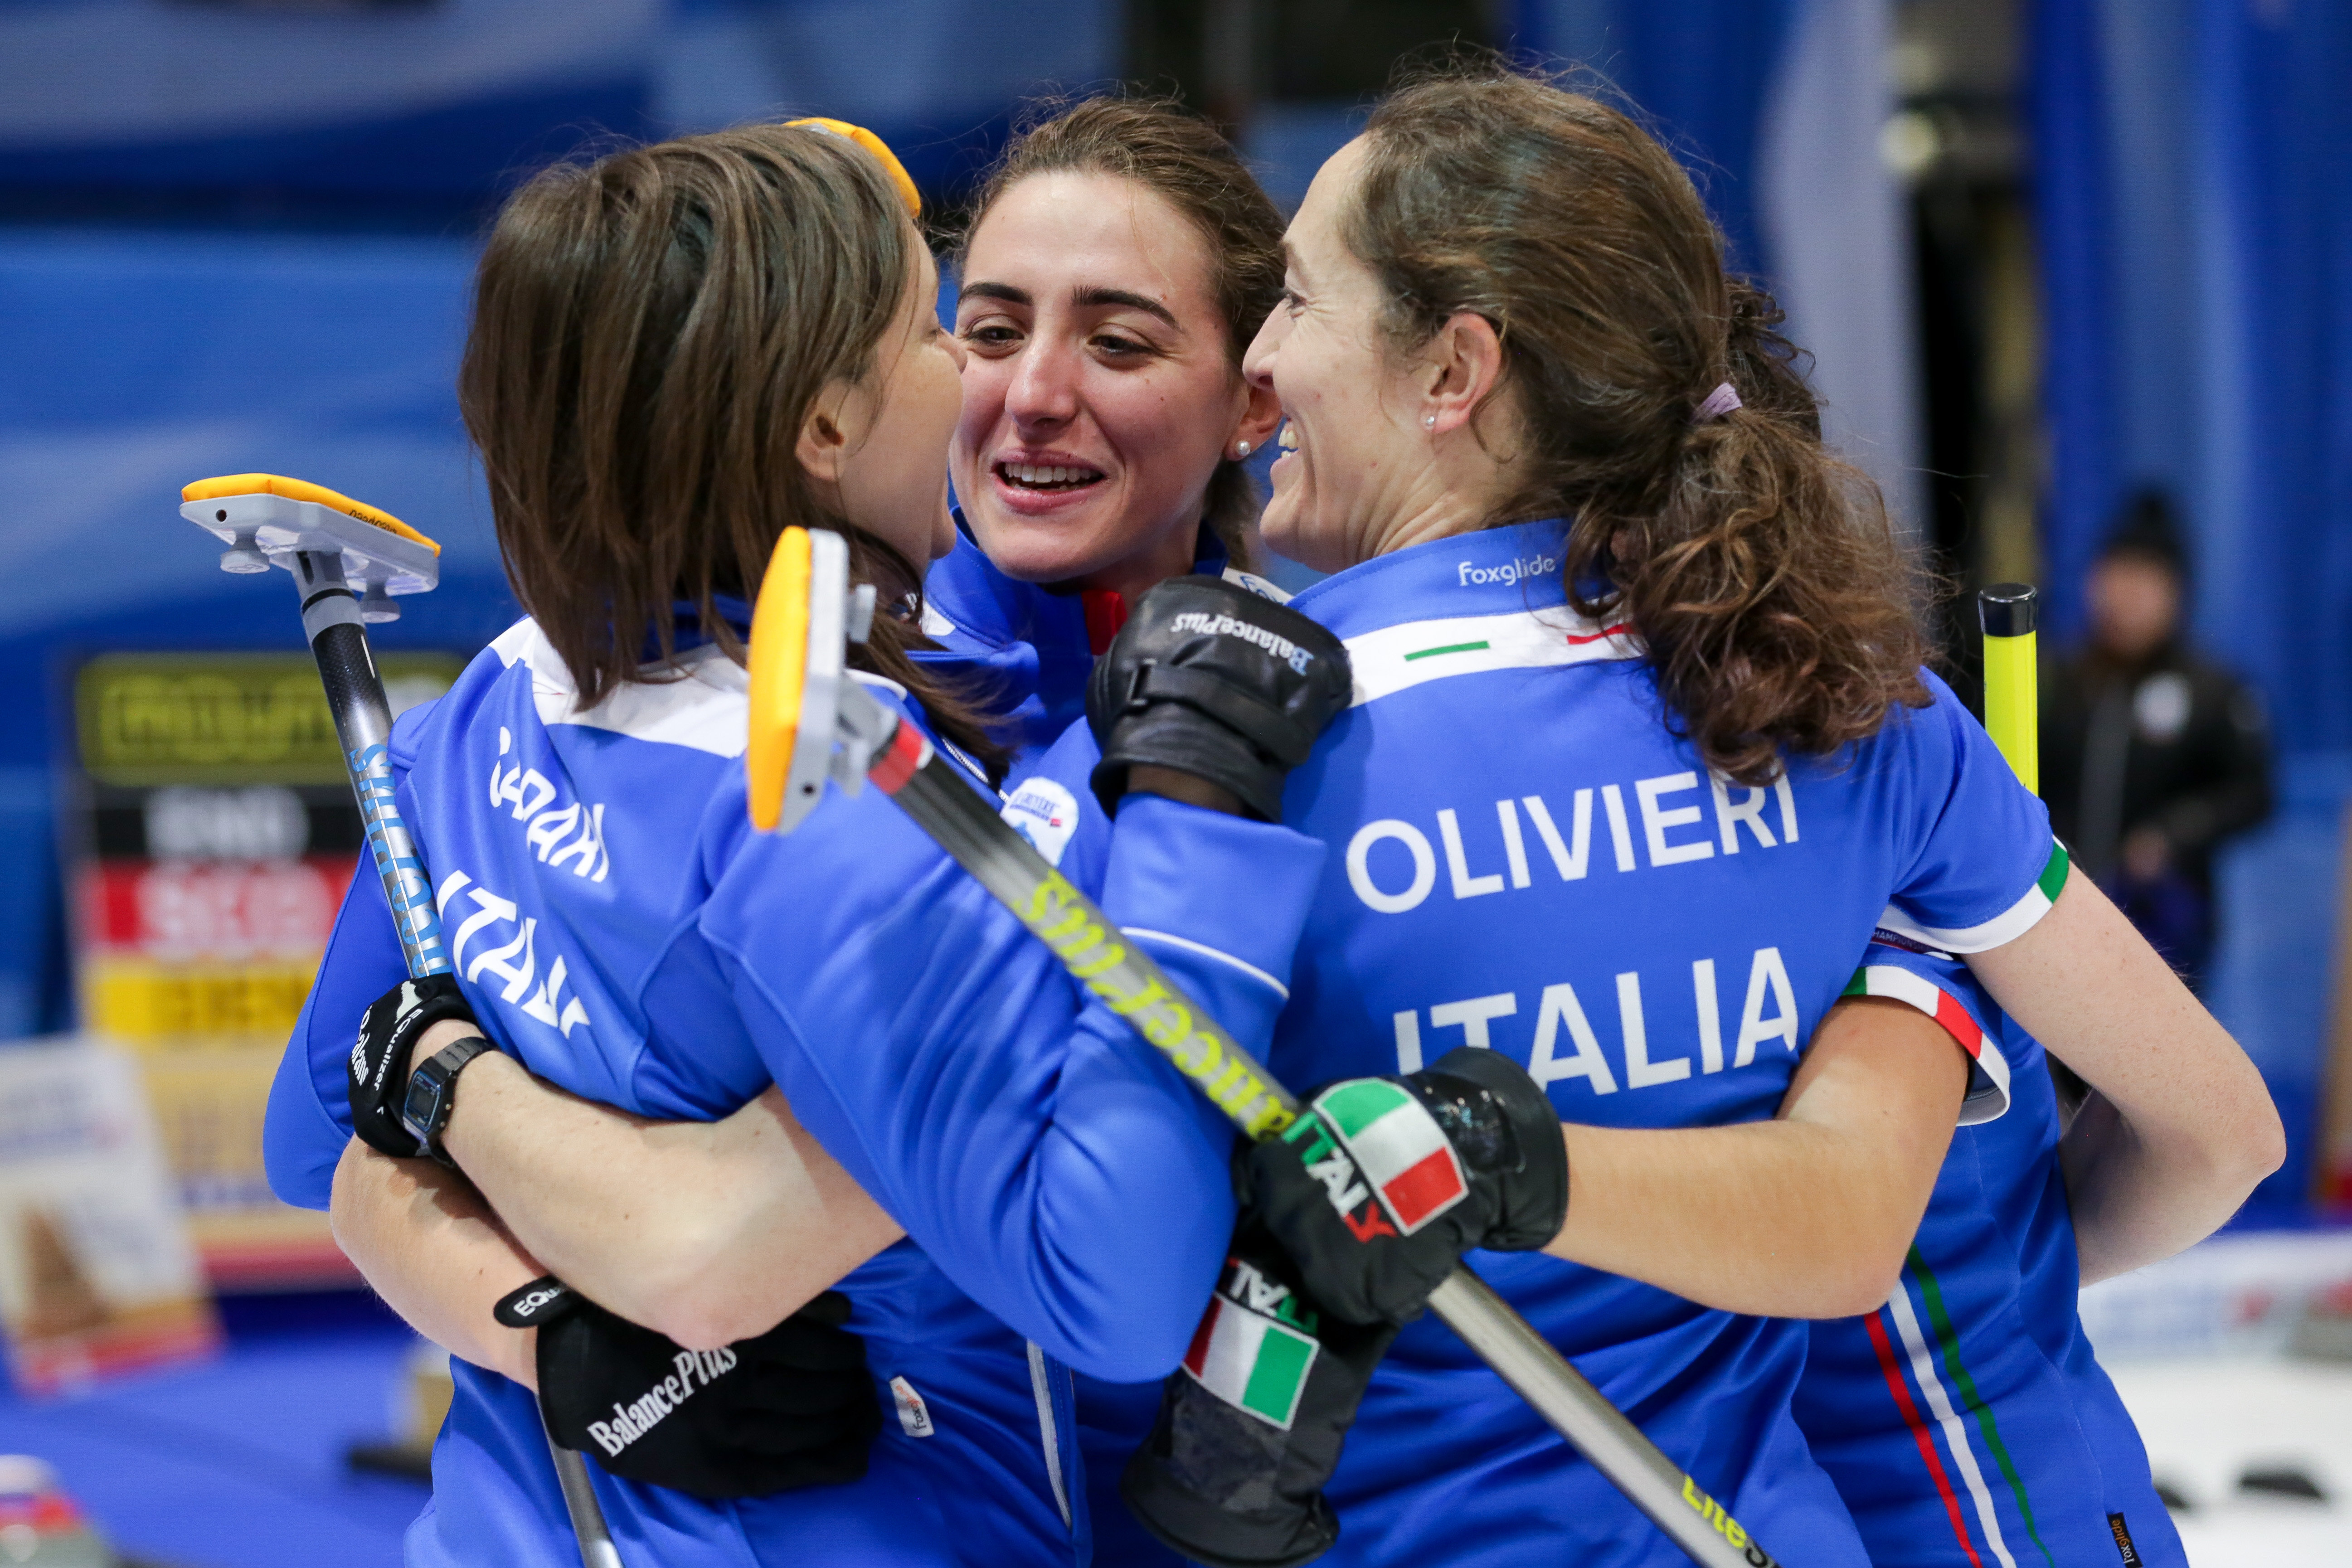 Bronzo per l'Italia femminile agli Europei di San Gallo. É la terza medaglia nella storia azzurra